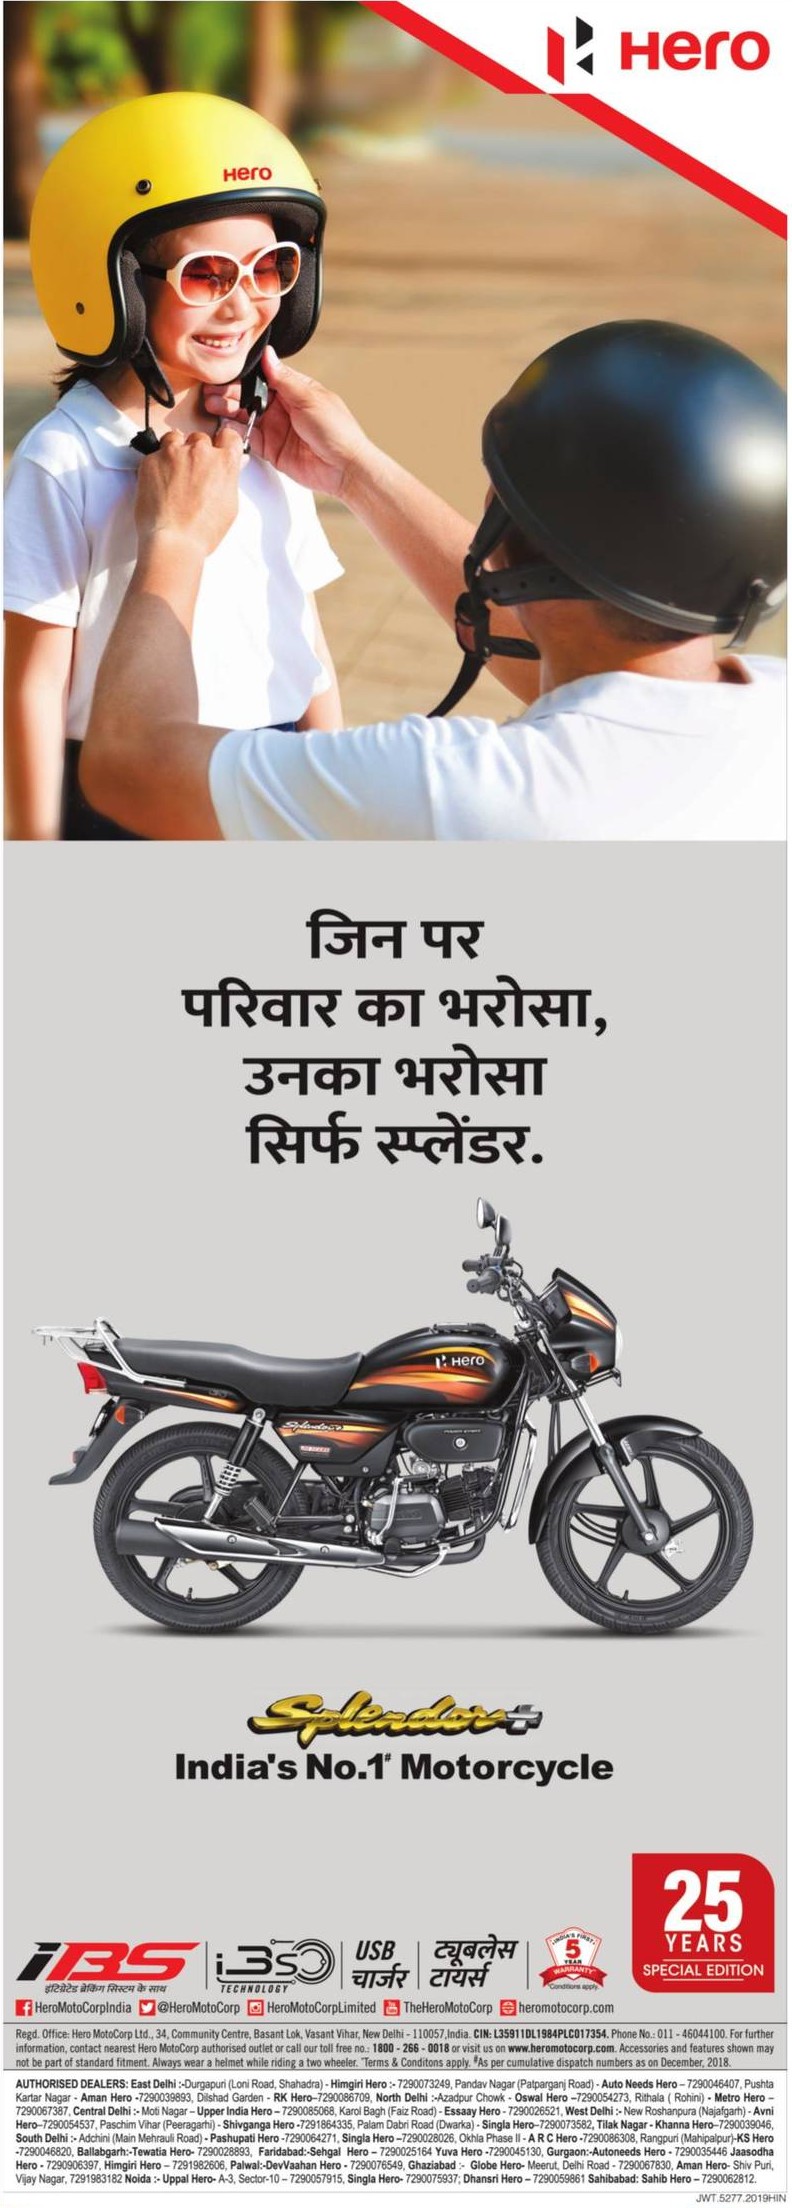 hero-splendor-plus-indias-no-1-motorcycle-ad-amar-ujala-delhi-08-05-2019.jpg